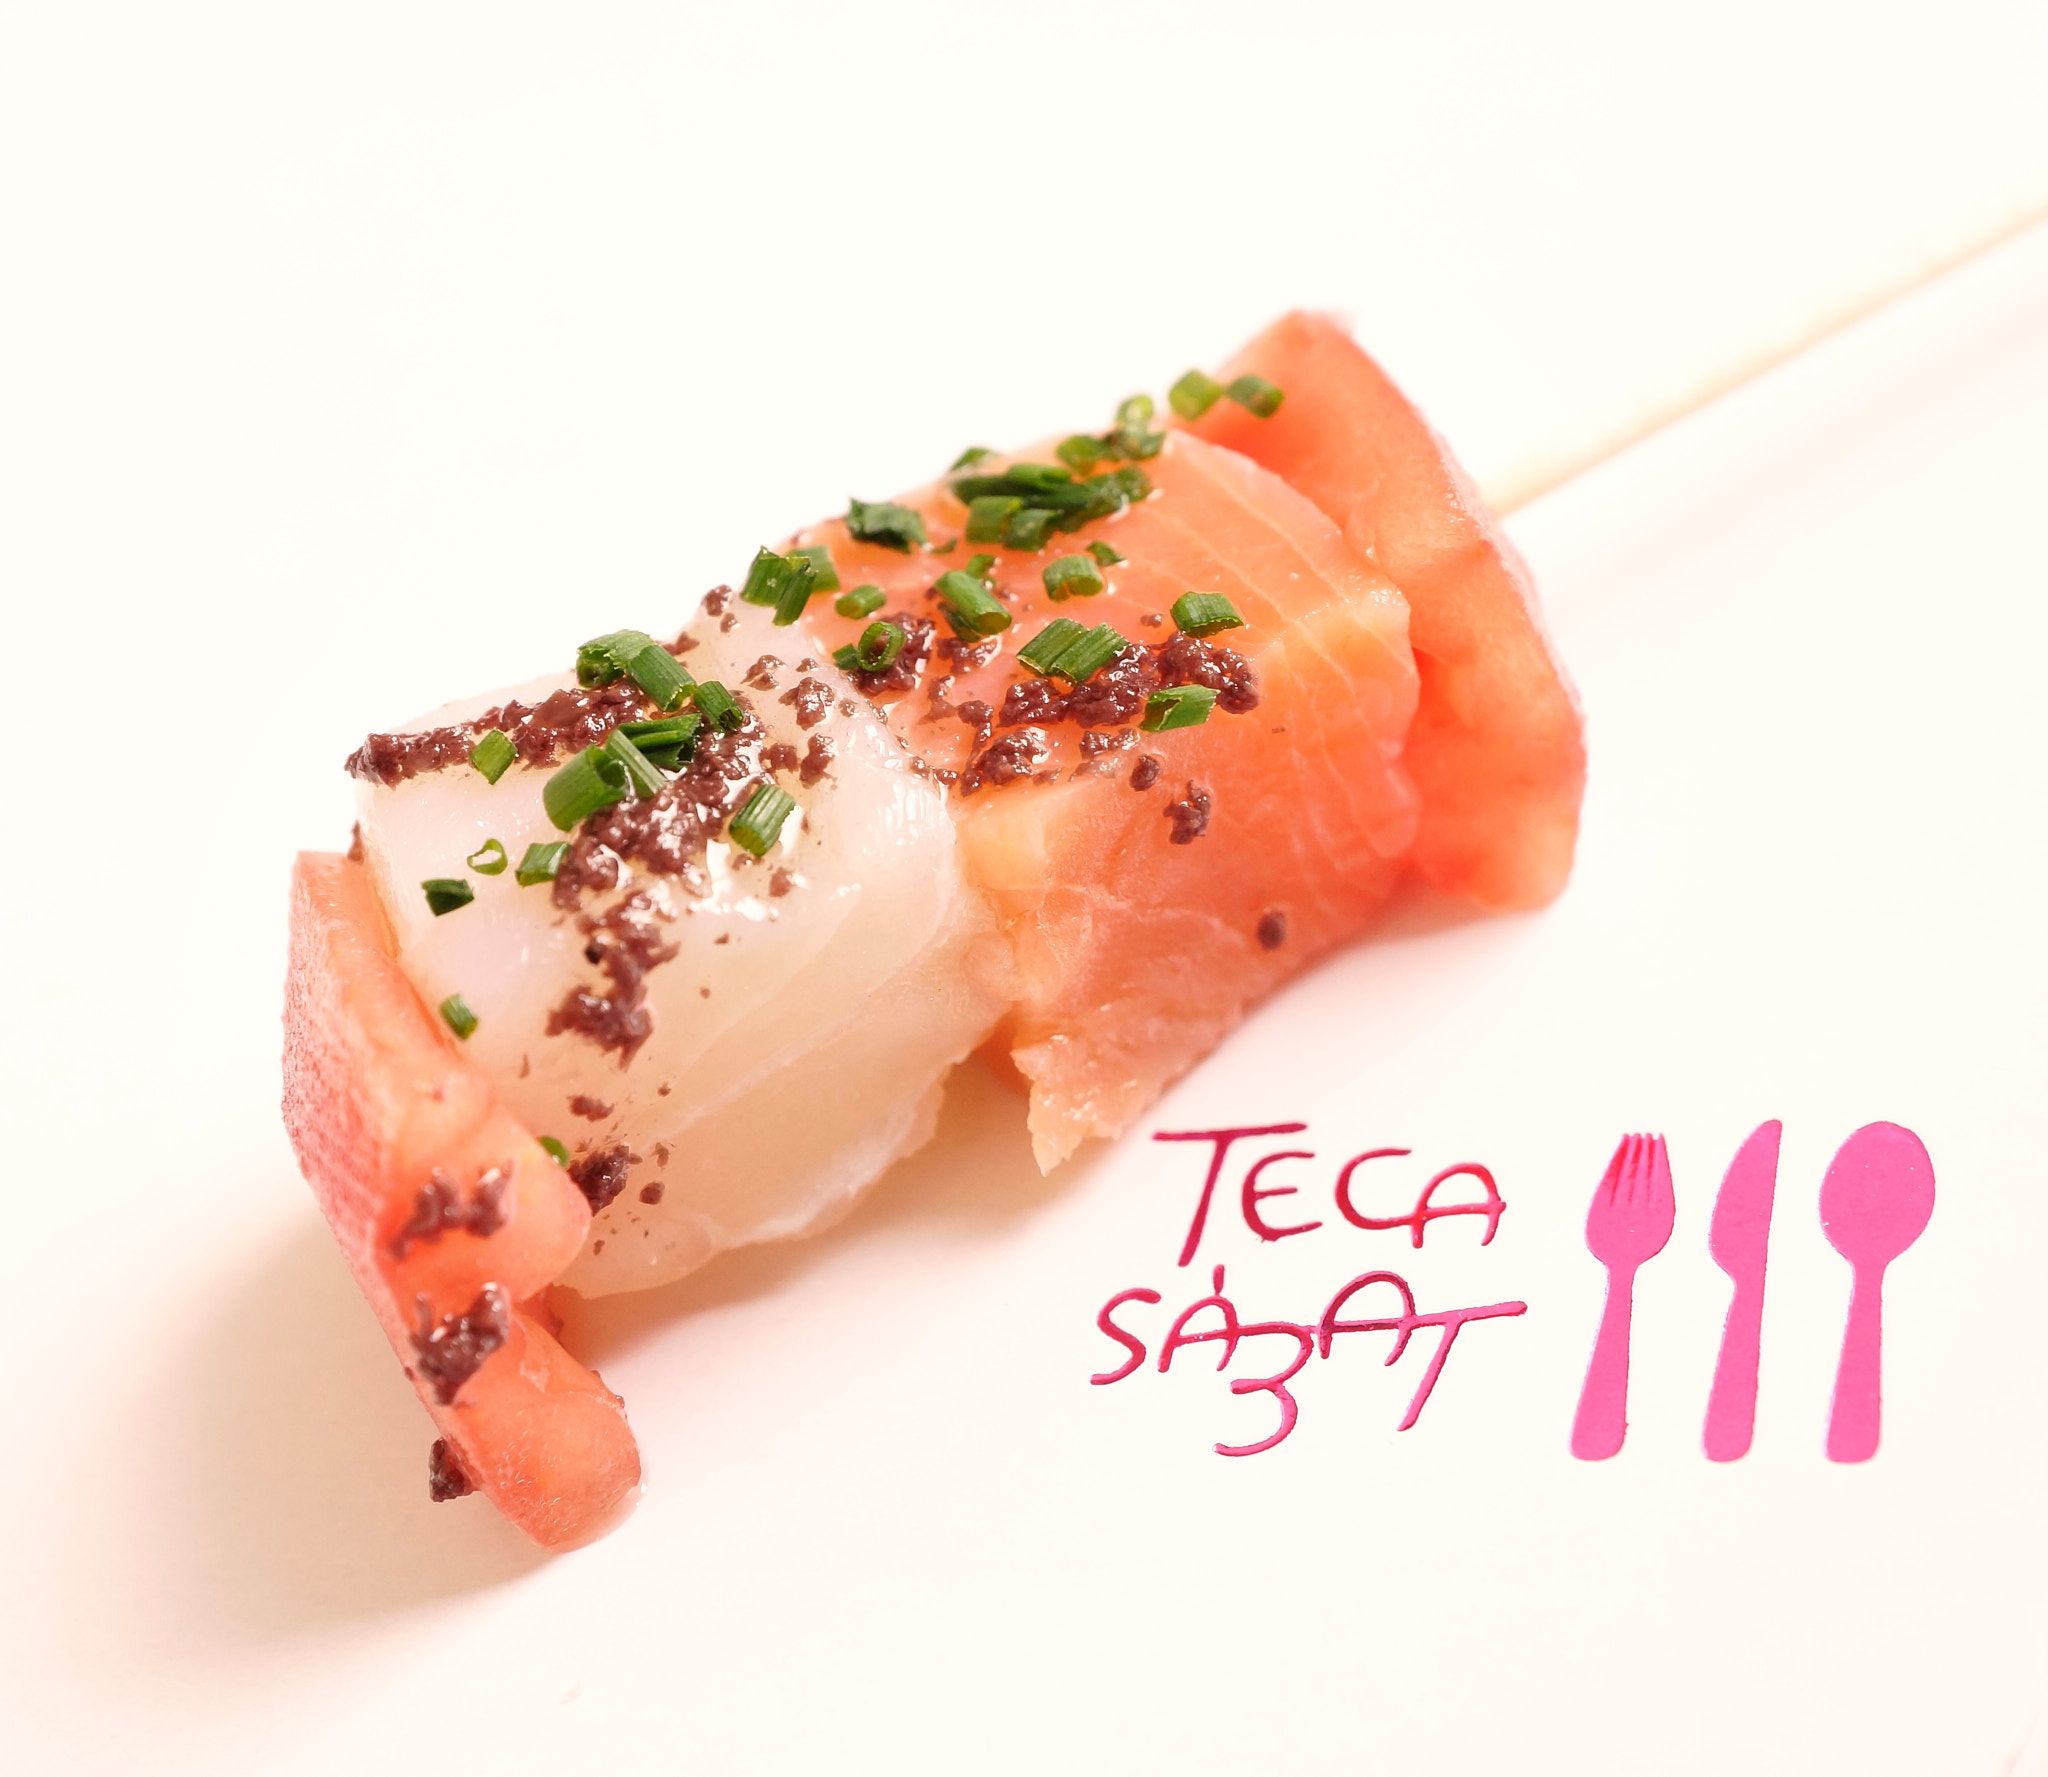 Teca Sabat ofereix menjar emportar-se com canapés de salmó. FOTO: Cedida